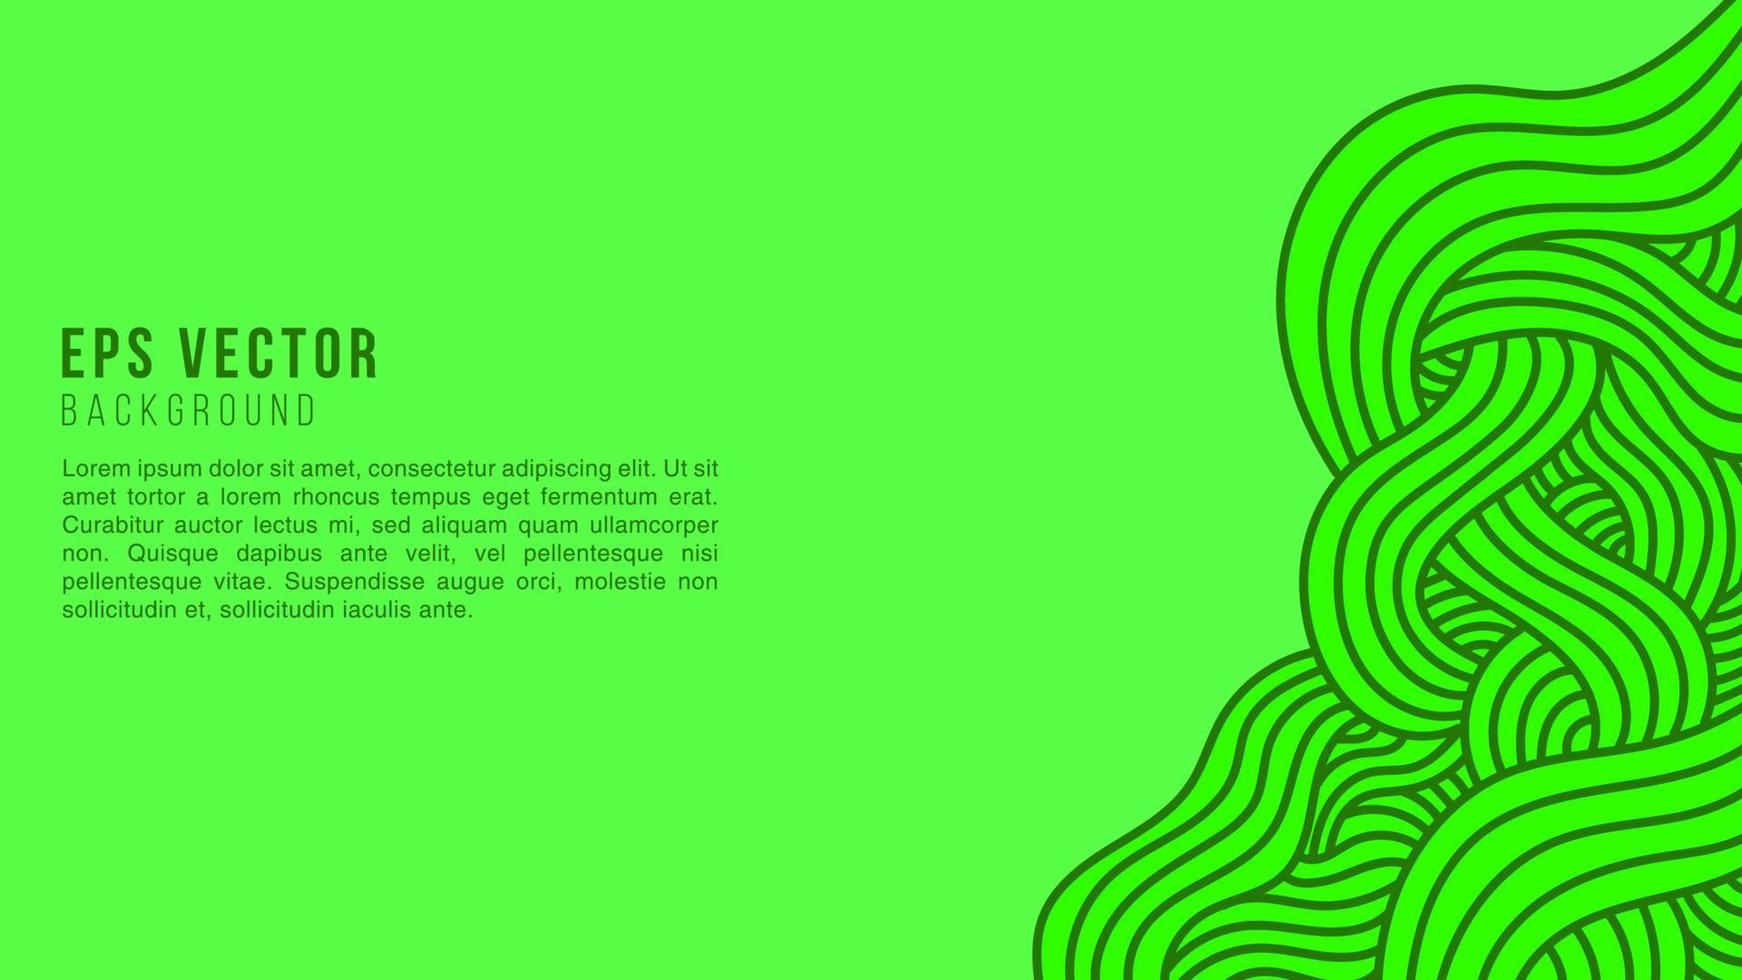 abstrait de lignes ondulées vertes avec style de contour dessiné à la main. peut être utilisé pour une affiche, une bannière commerciale, un dépliant, une publicité, une brochure, un catalogue, un site Web, un site Web, une présentation, une couverture de livre, un dépliant vecteur